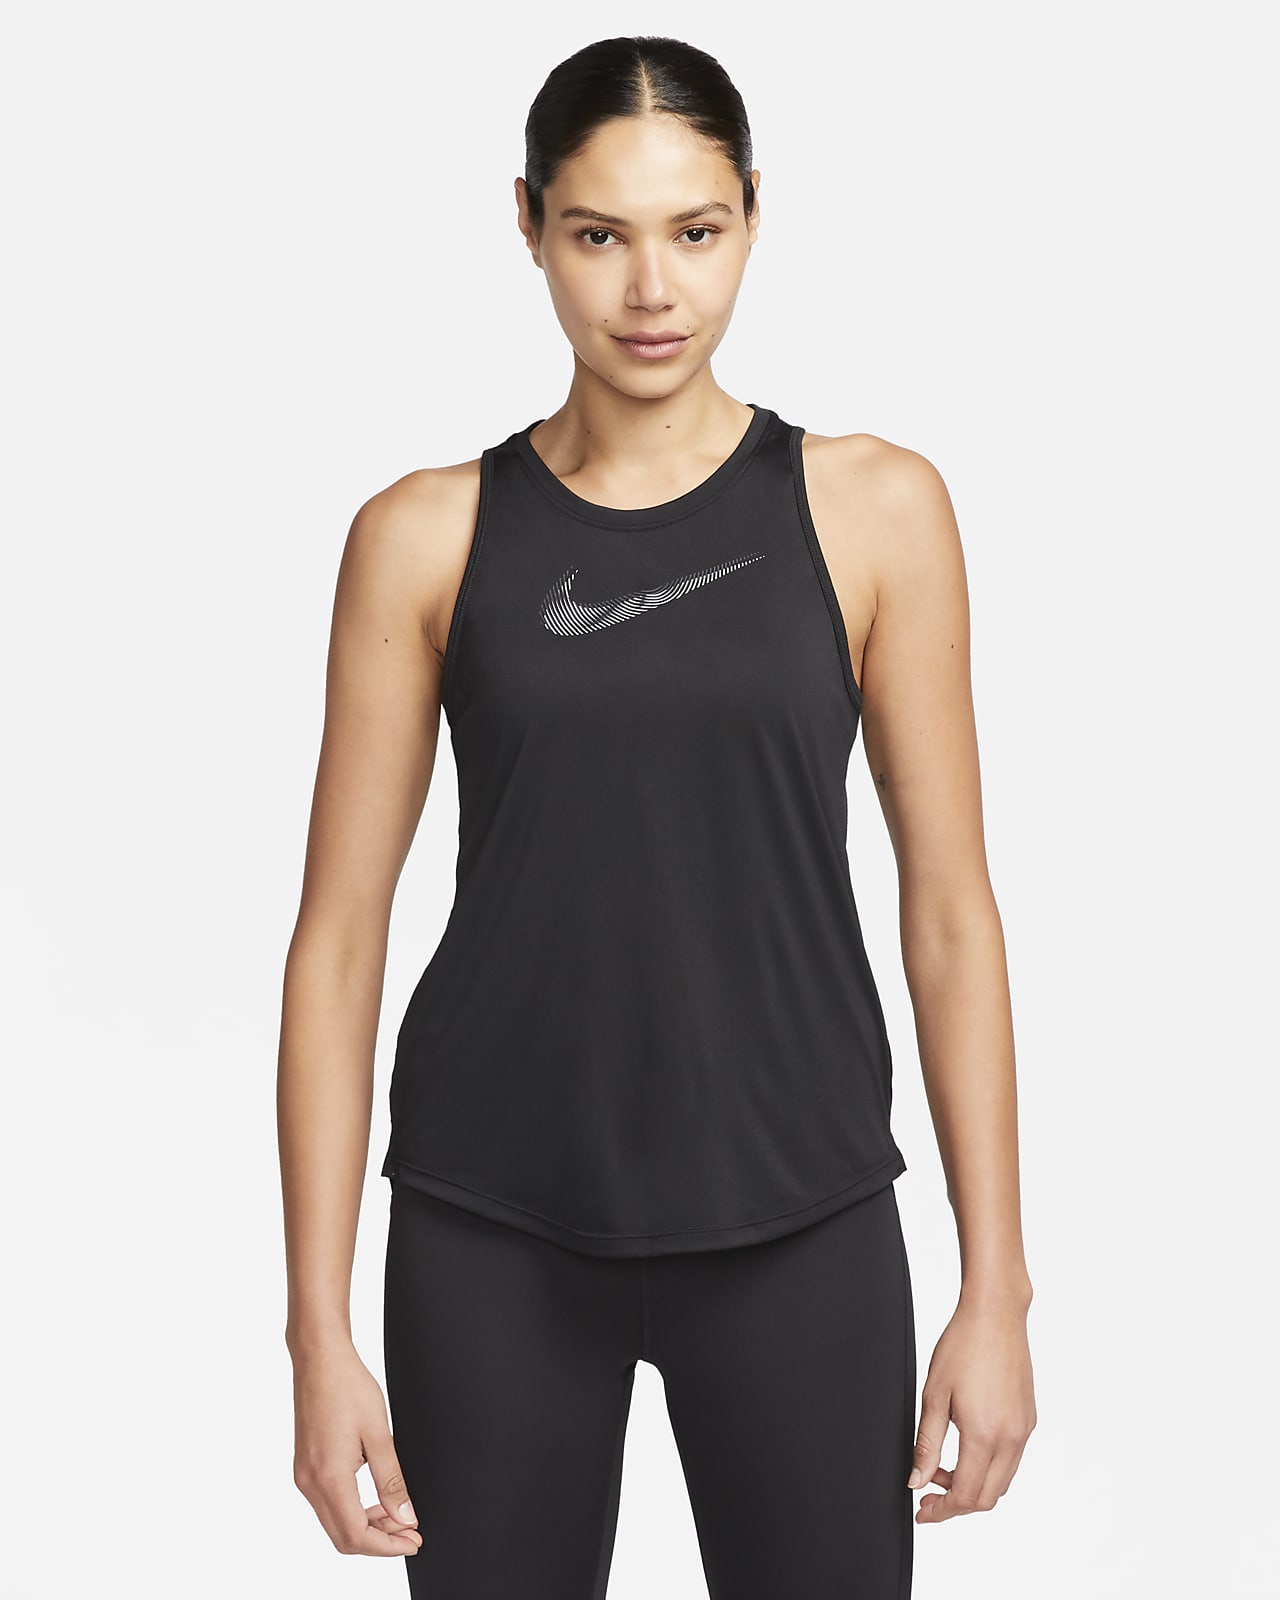 Alargar Poner Inapropiado Nike Dri-FIT Swoosh Women's Running Tank Top. Nike LU